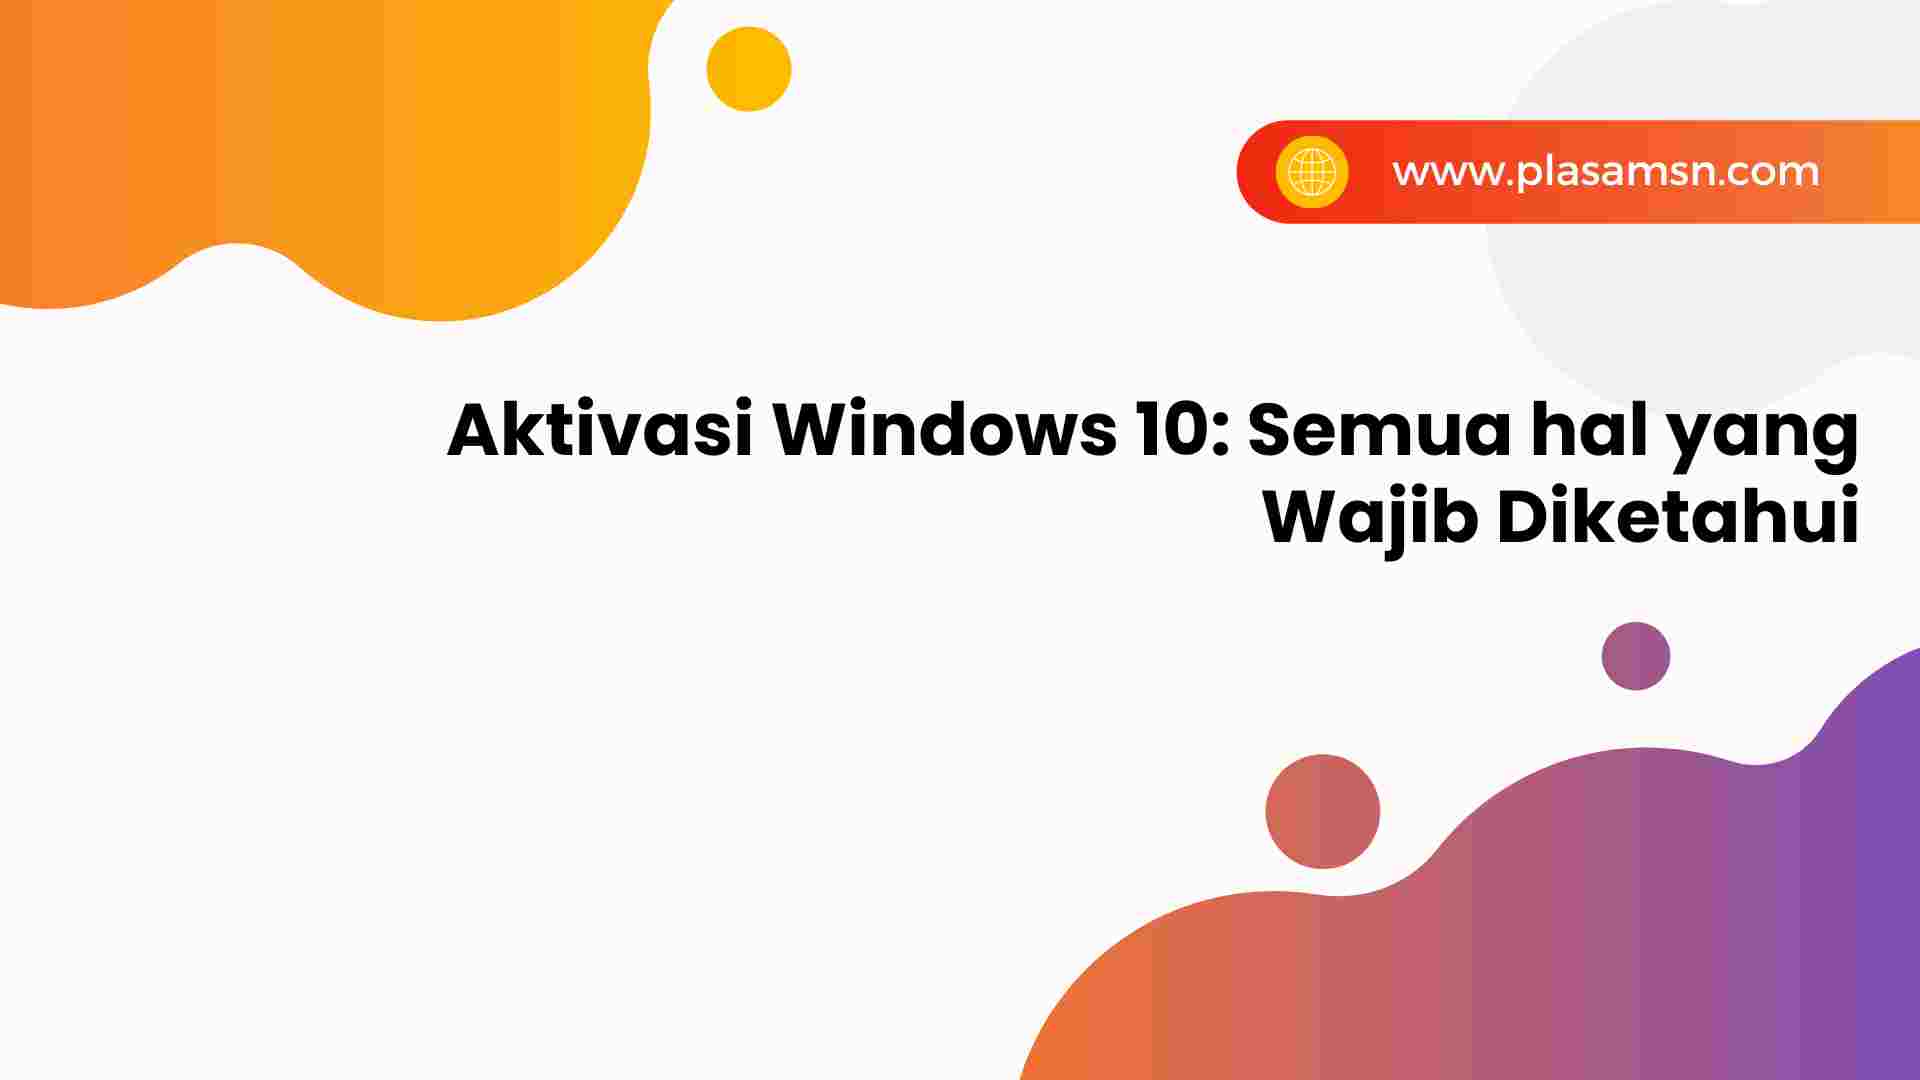 Aktivasi-Windows-10-Semua-hal-yang-Wajib-Diketahui